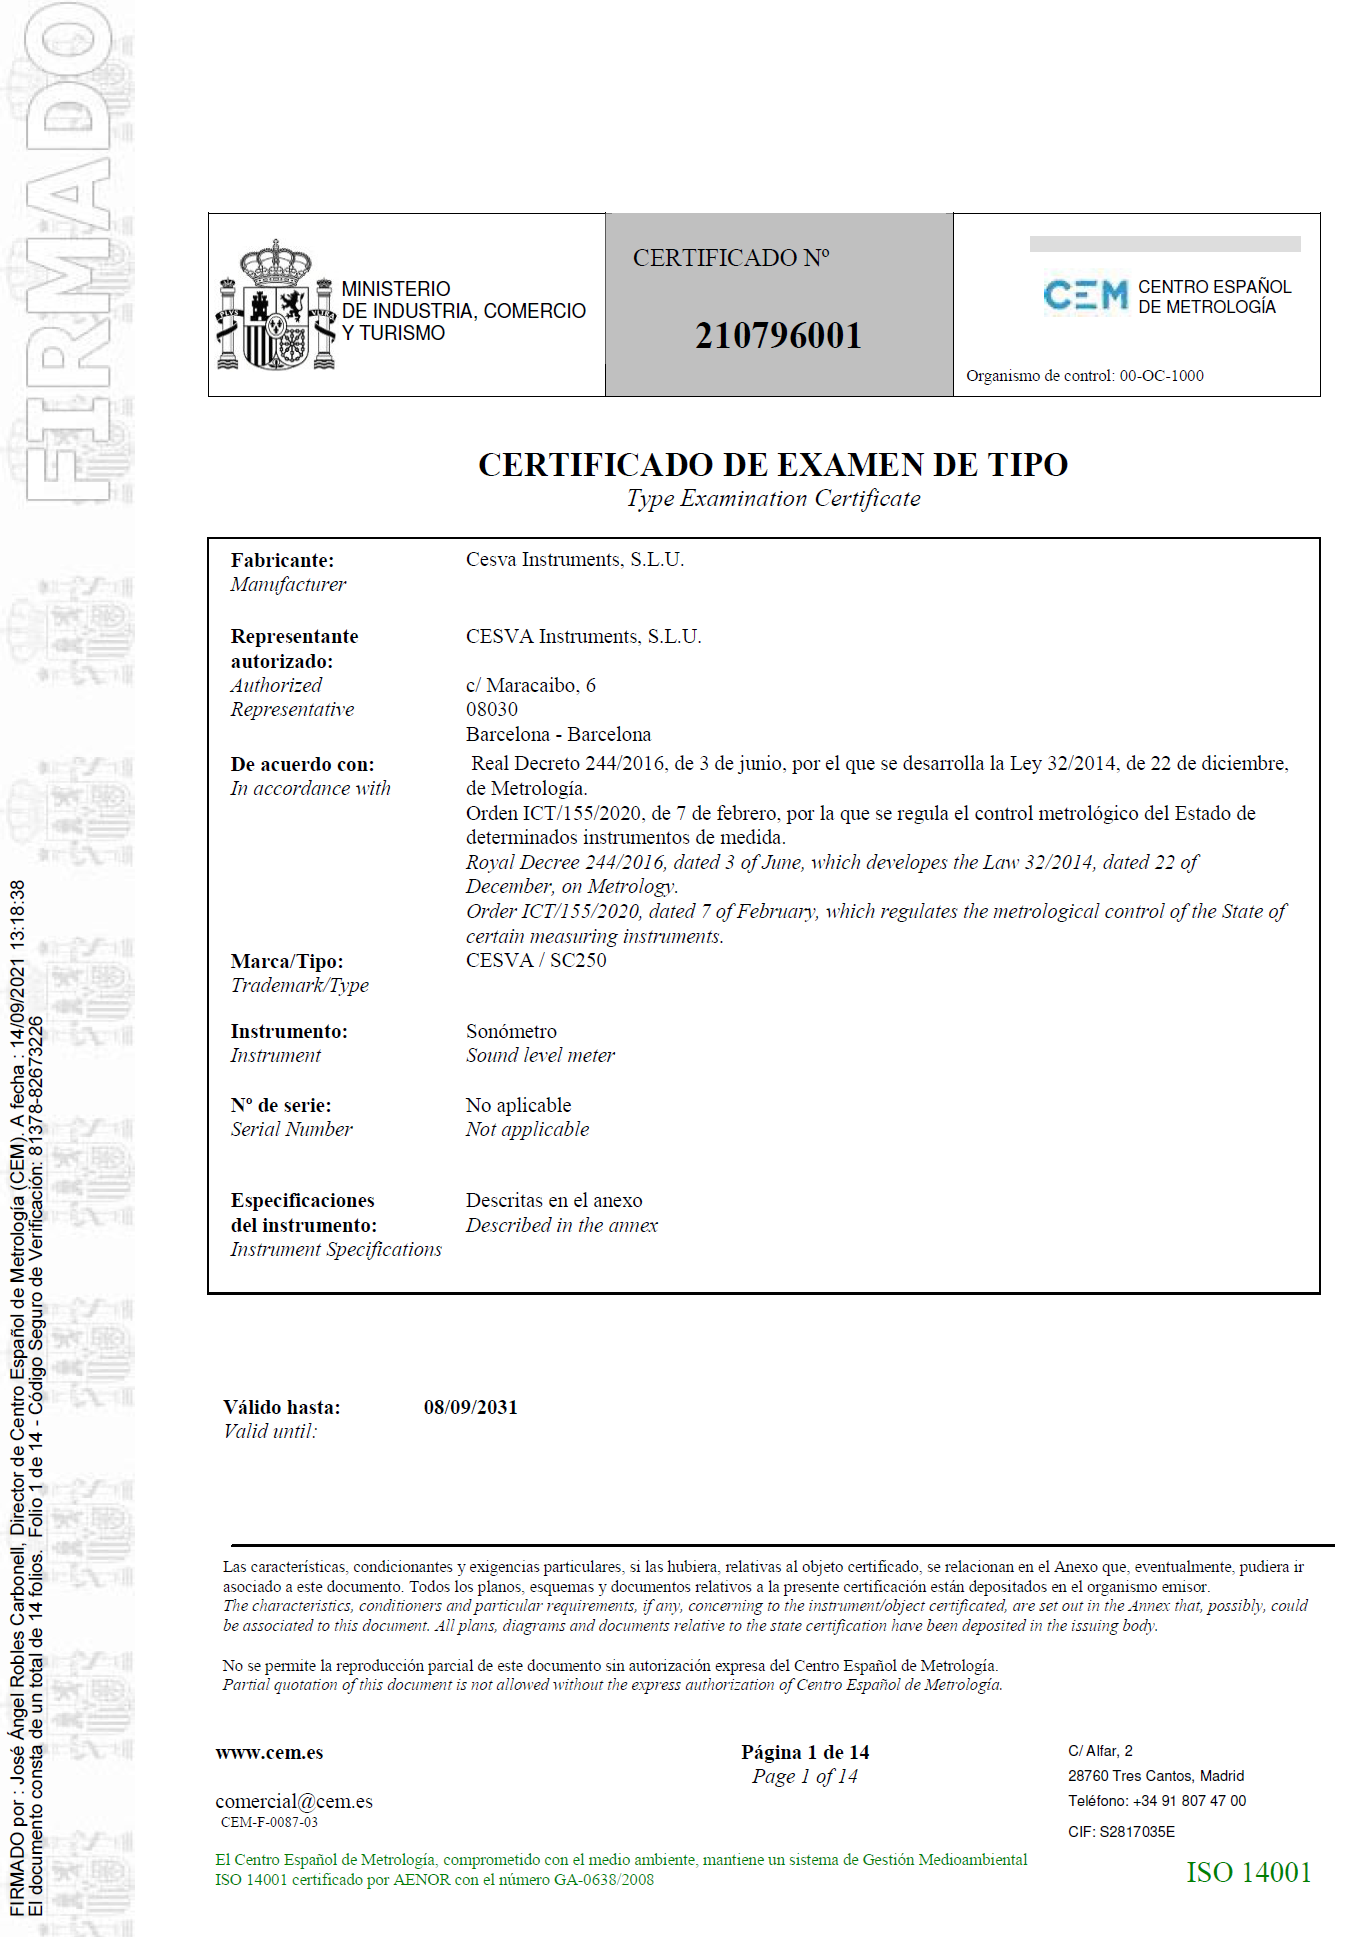 Certificado de examen de tipo nº 210796001